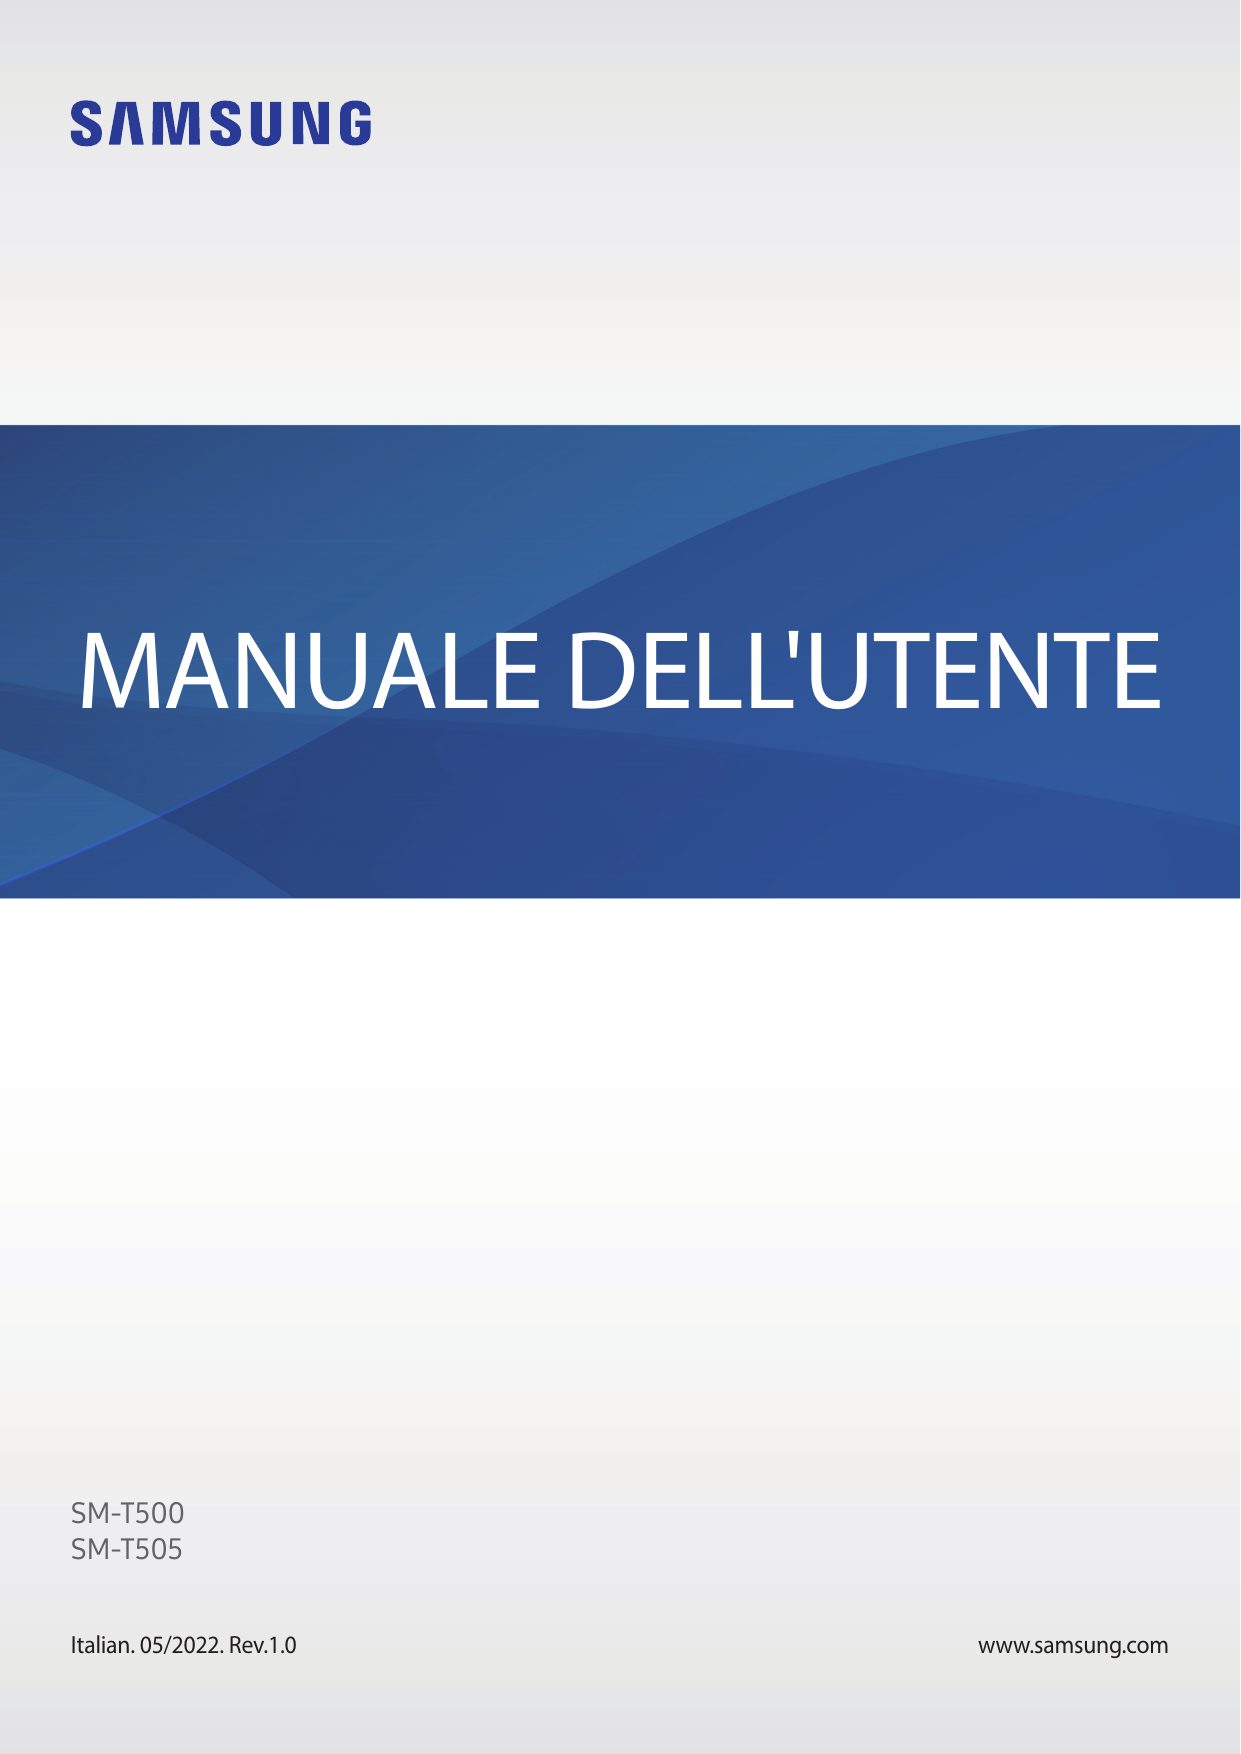 MANUALE DELL'UTENTESM-T500SM-T505Italian. 05/2022. Rev.1.0www.samsung.com